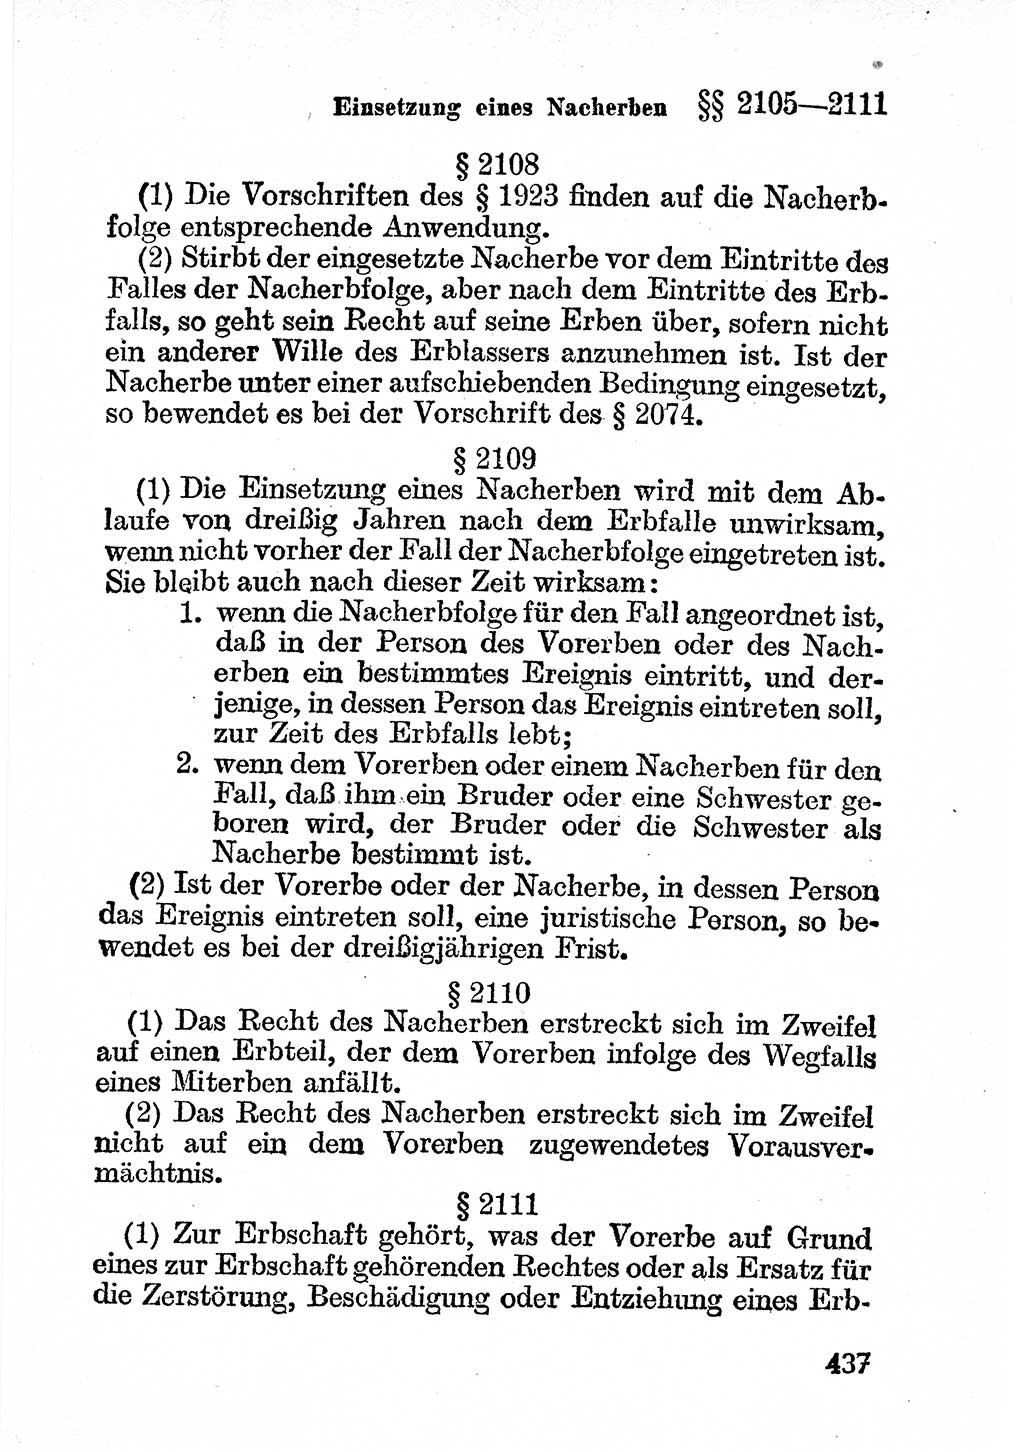 Bürgerliches Gesetzbuch (BGB) nebst wichtigen Nebengesetzen [Deutsche Demokratische Republik (DDR)] 1956, Seite 437 (BGB Nebenges. DDR 1956, S. 437)